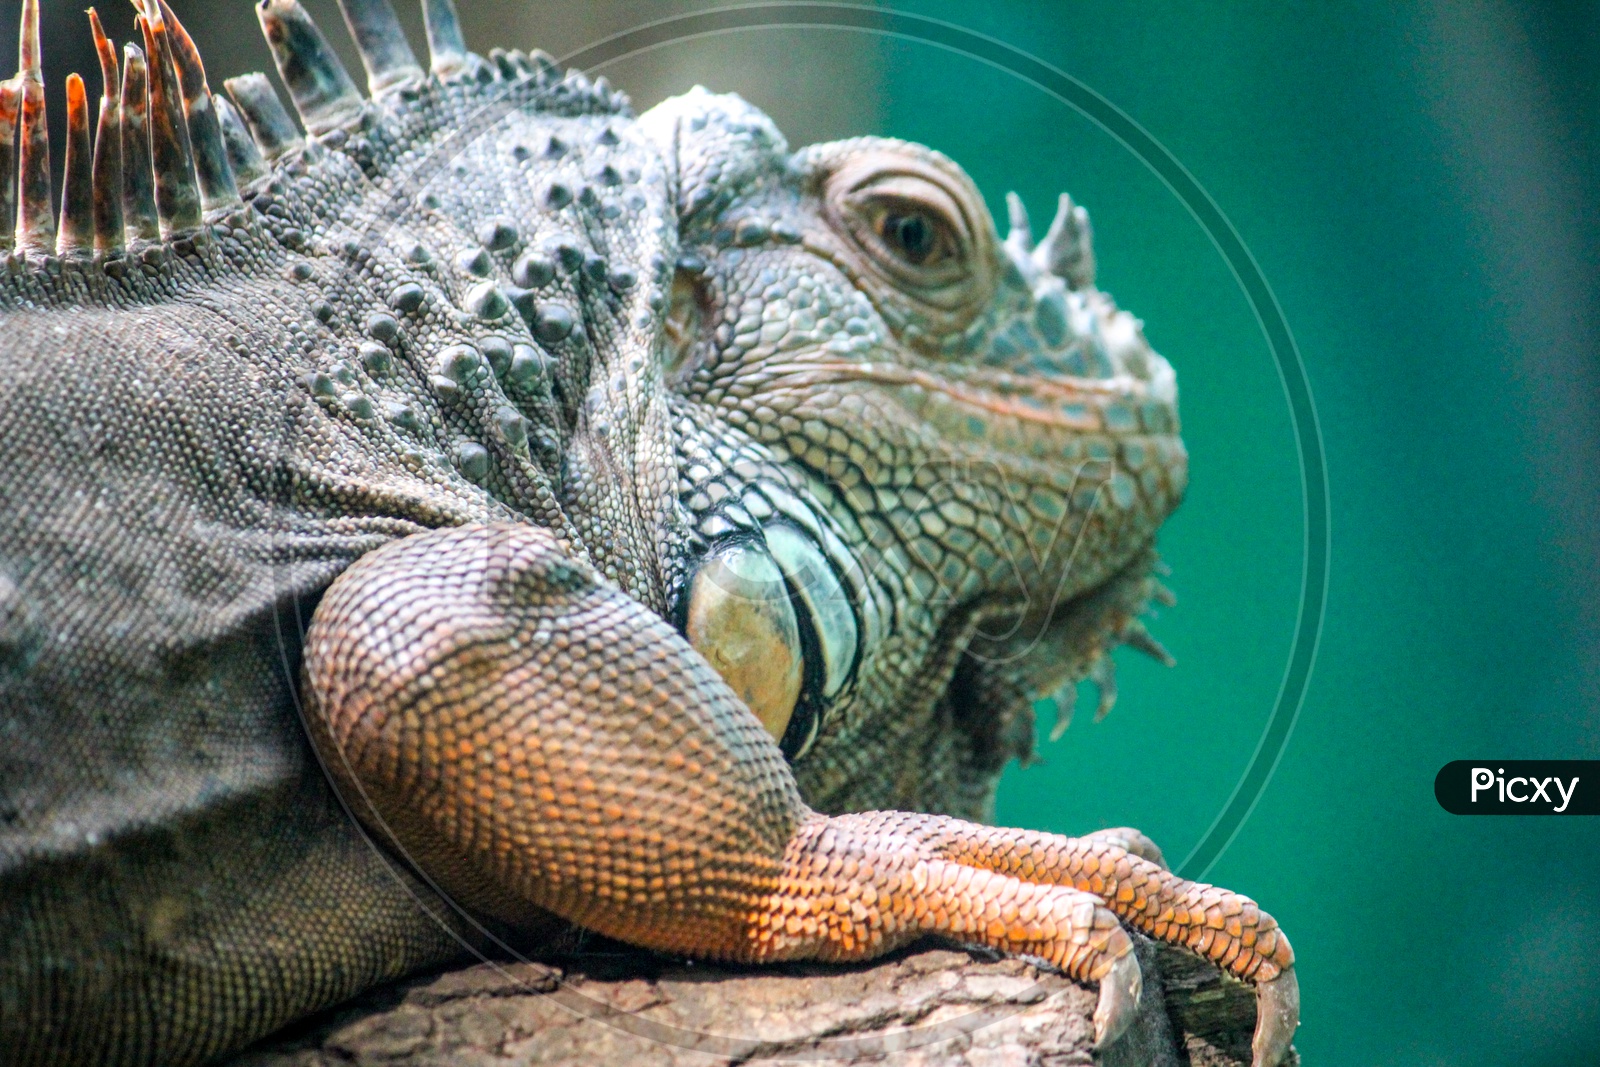 Fan Throated Lizard in a Zoo Closeup Shot